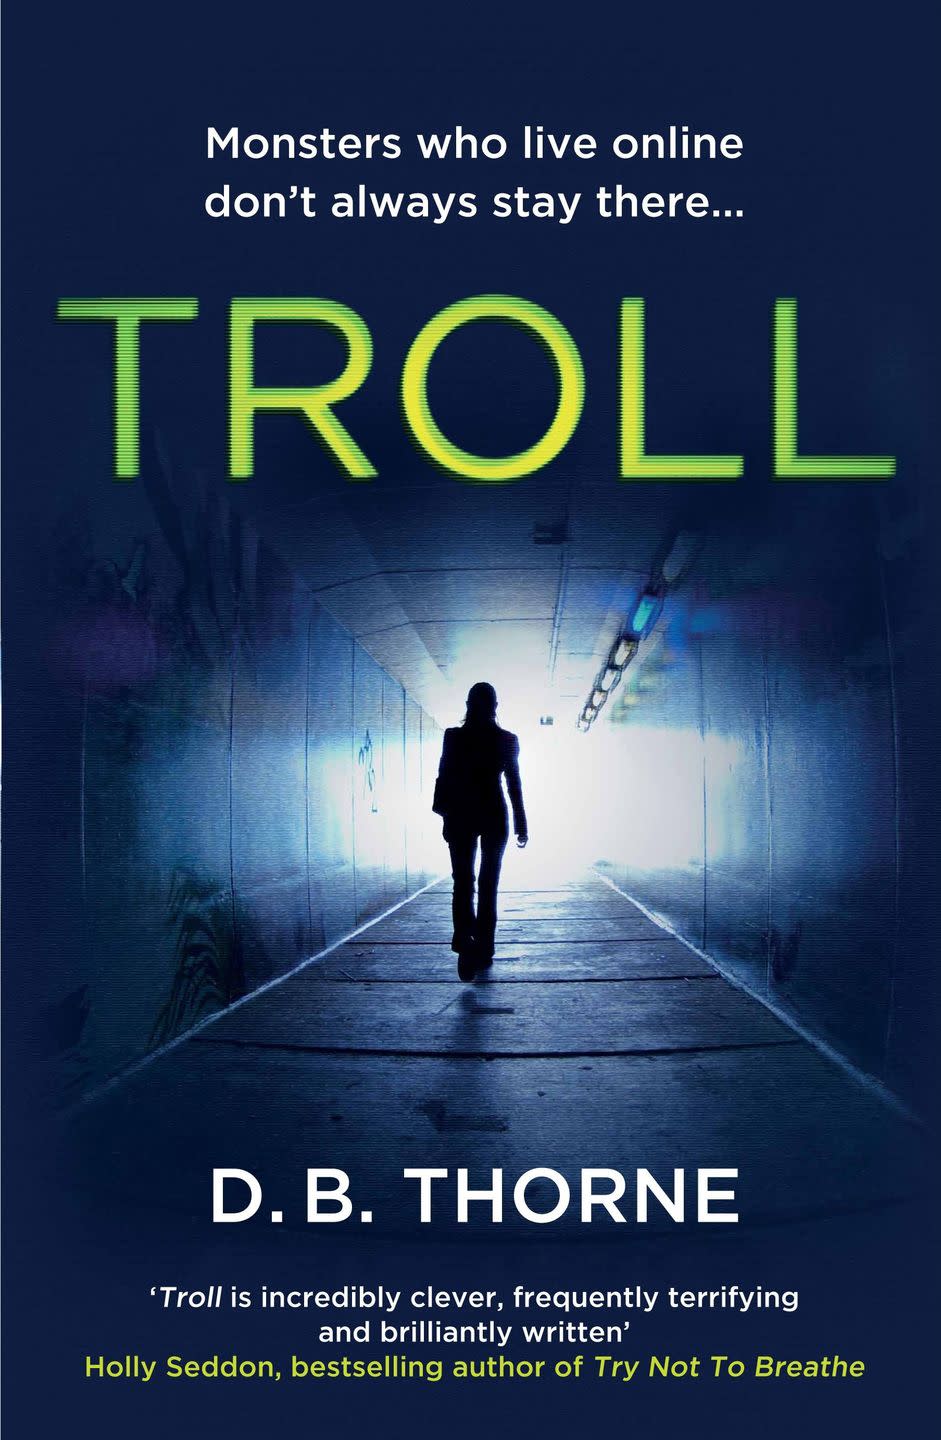 'Troll' by D.B. Thorne